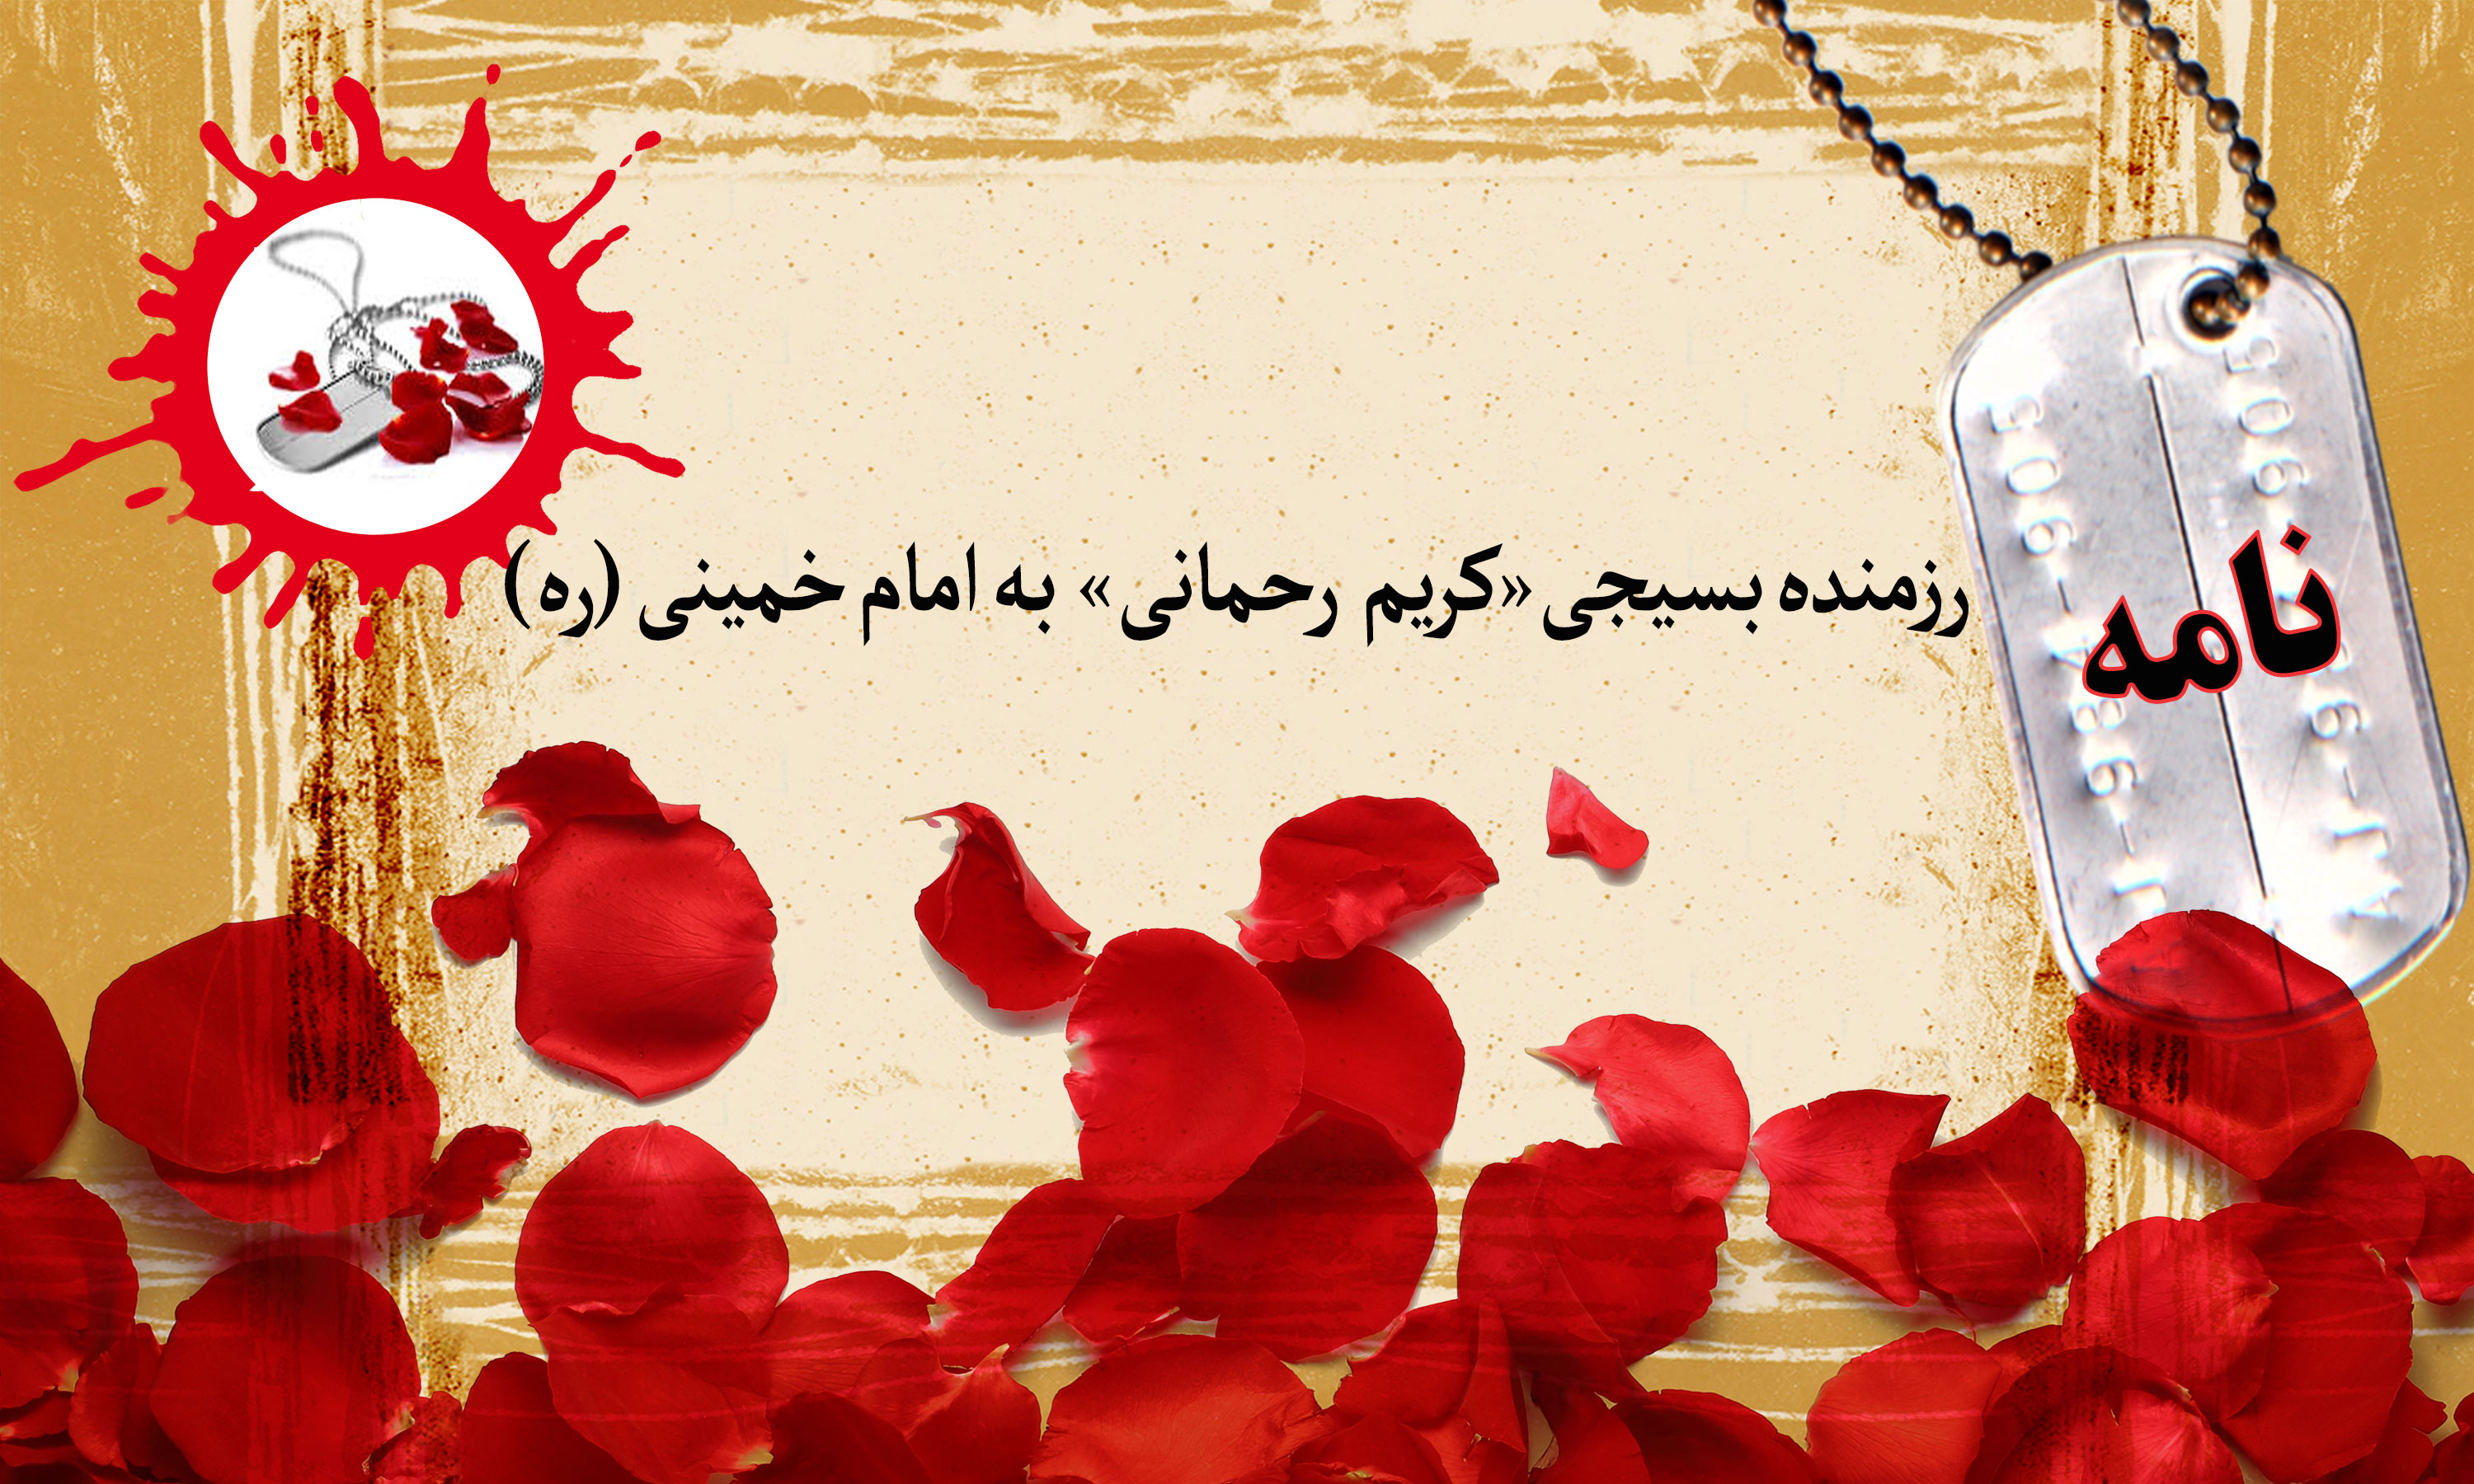 نامه رزمنده بسیجی به امام خمینی (ره) / رهبر عزیز، دعا کنید تا شهید شوم